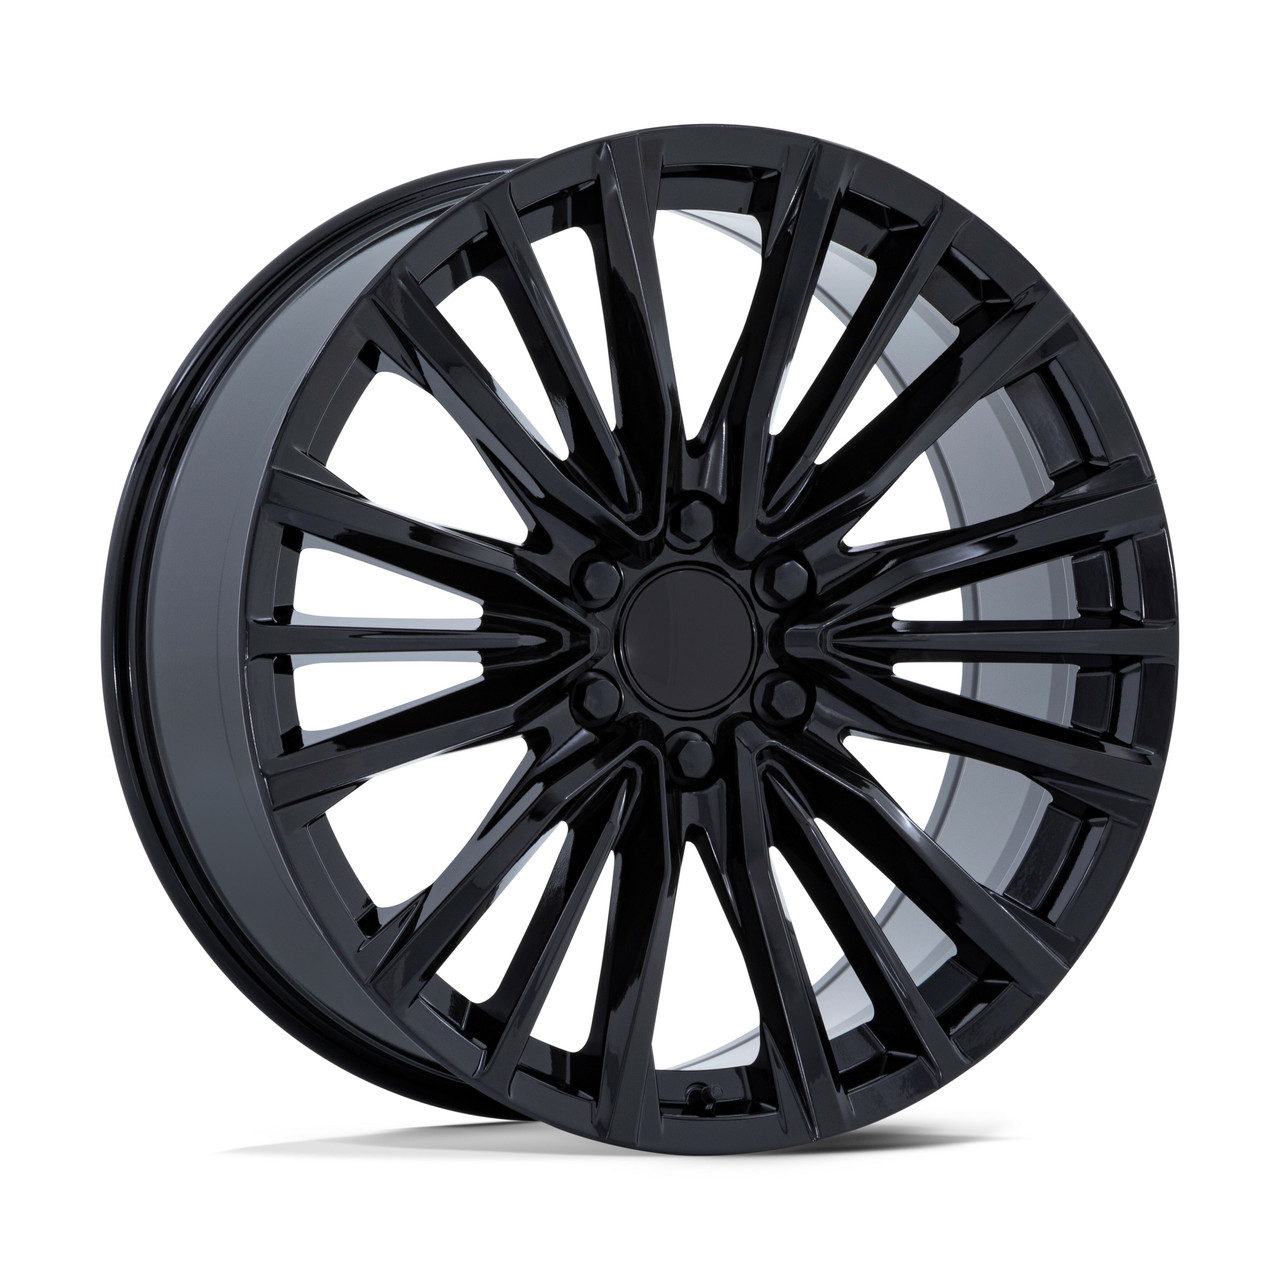 26" Performance Replicas PR223 Gloss Black 26x10 Wheel 6x5.5 28mm Rim